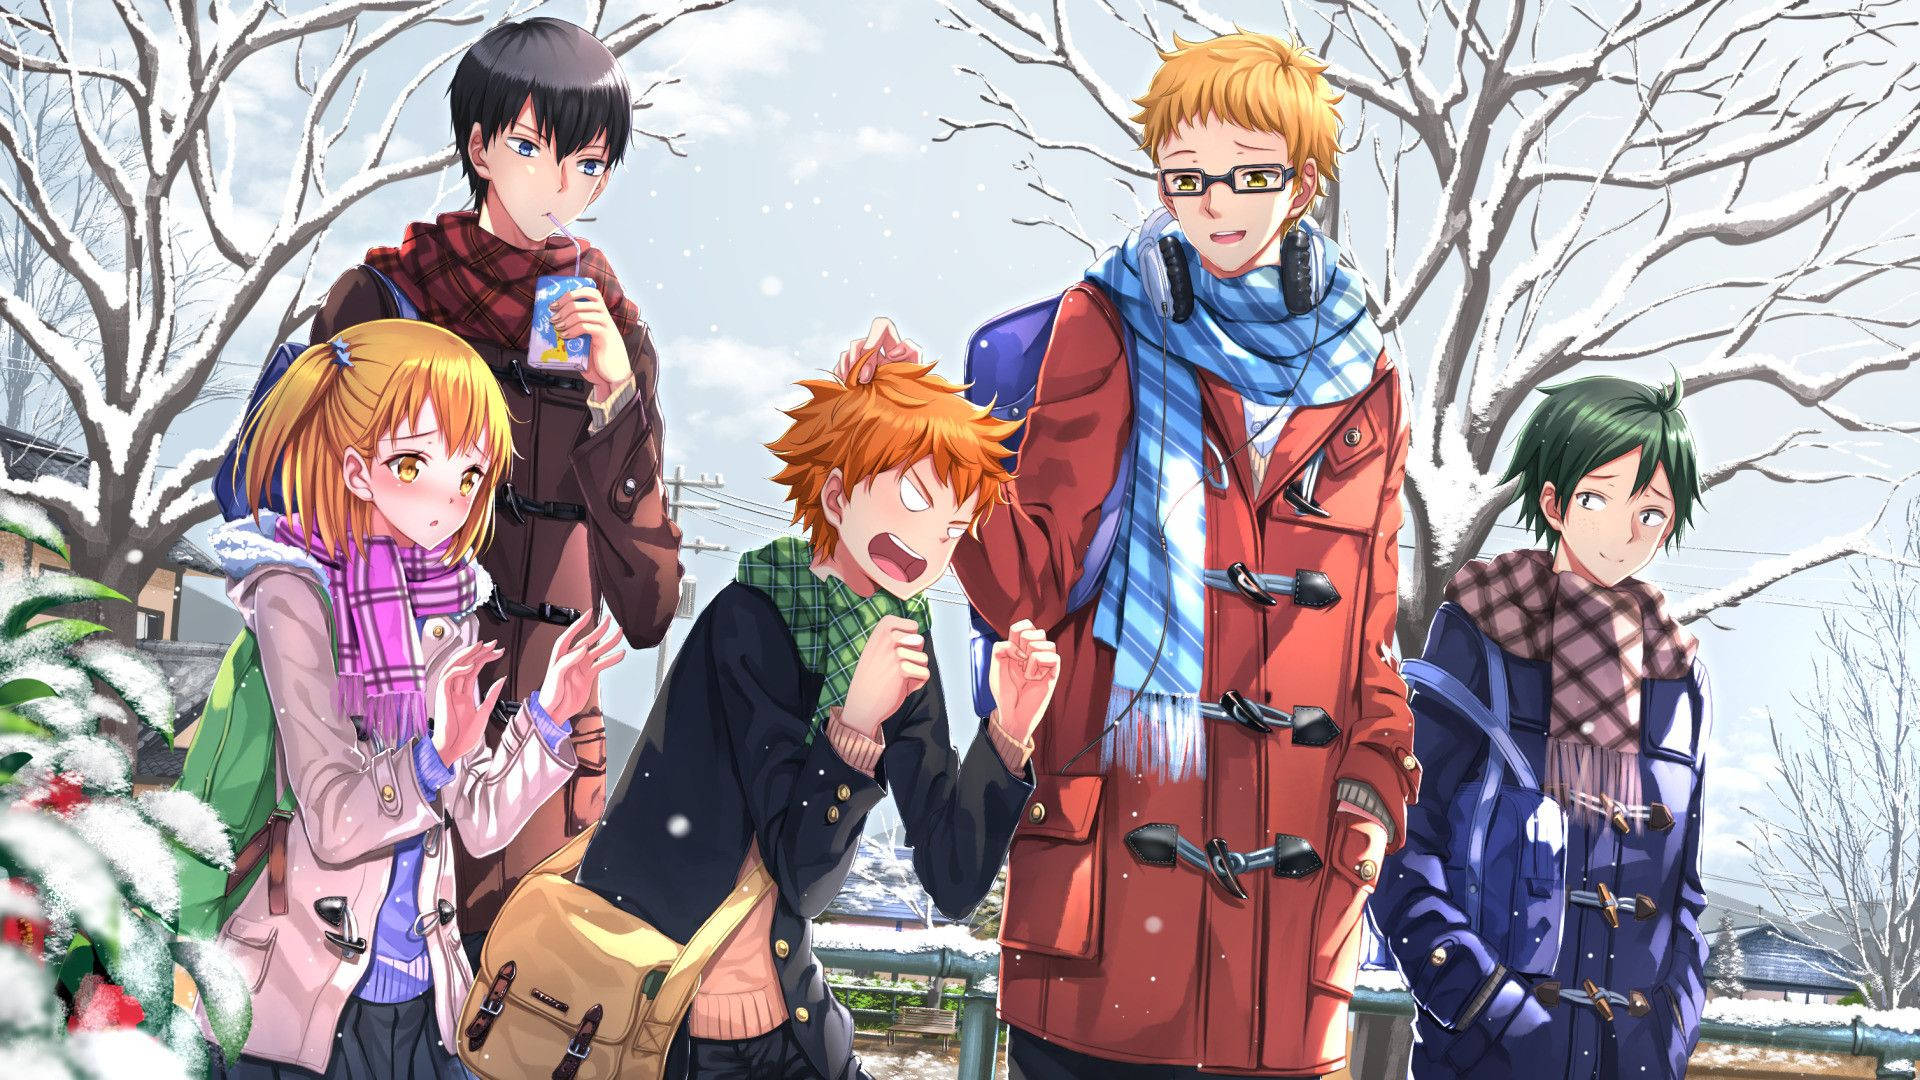 Kei Tsukishima And Friends Winter Day Background